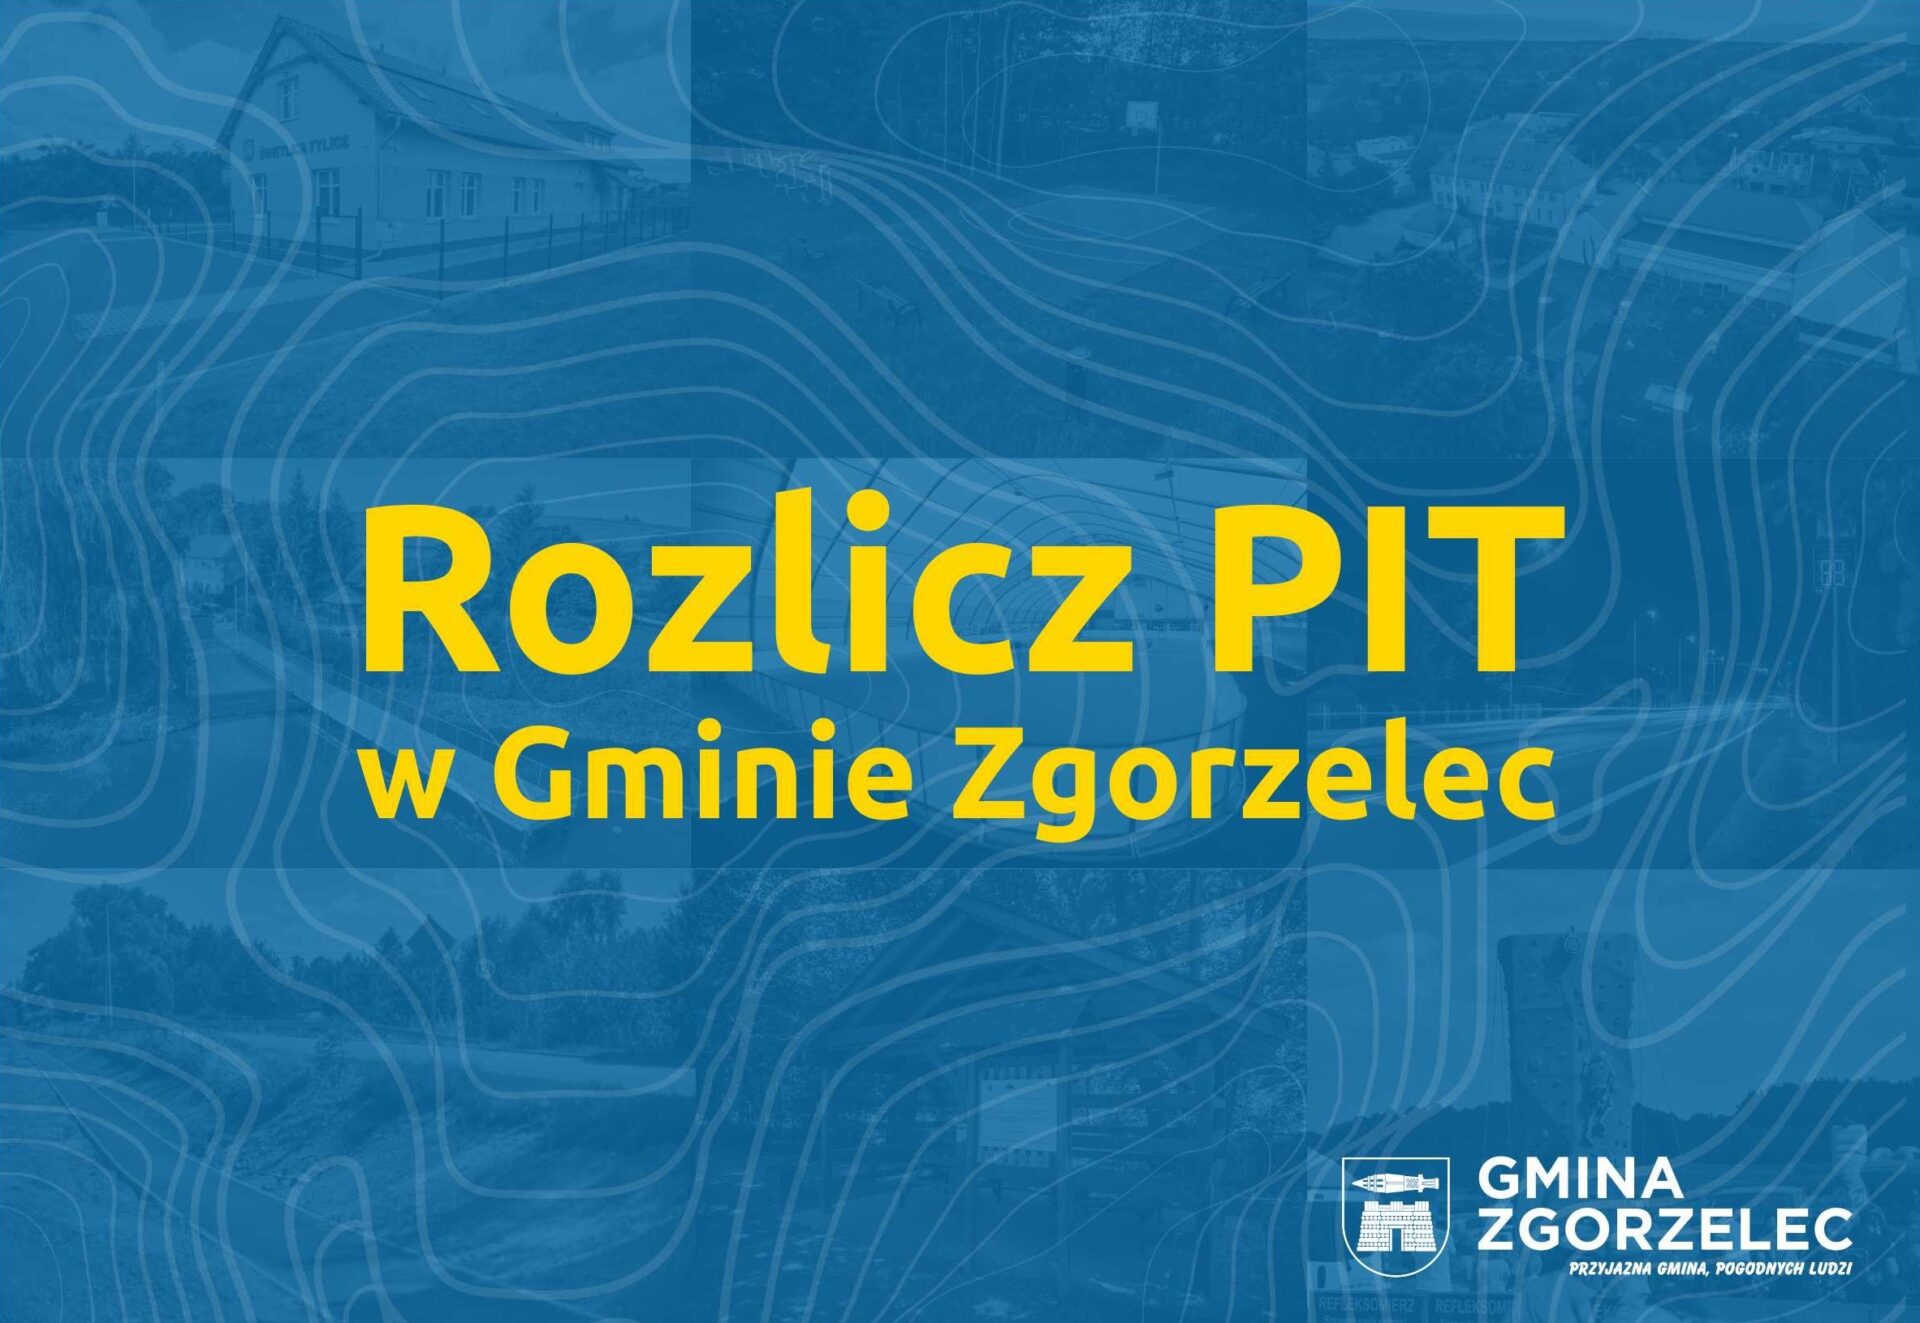 You are currently viewing Rozlicz PIT w Gminie Zgorzelec